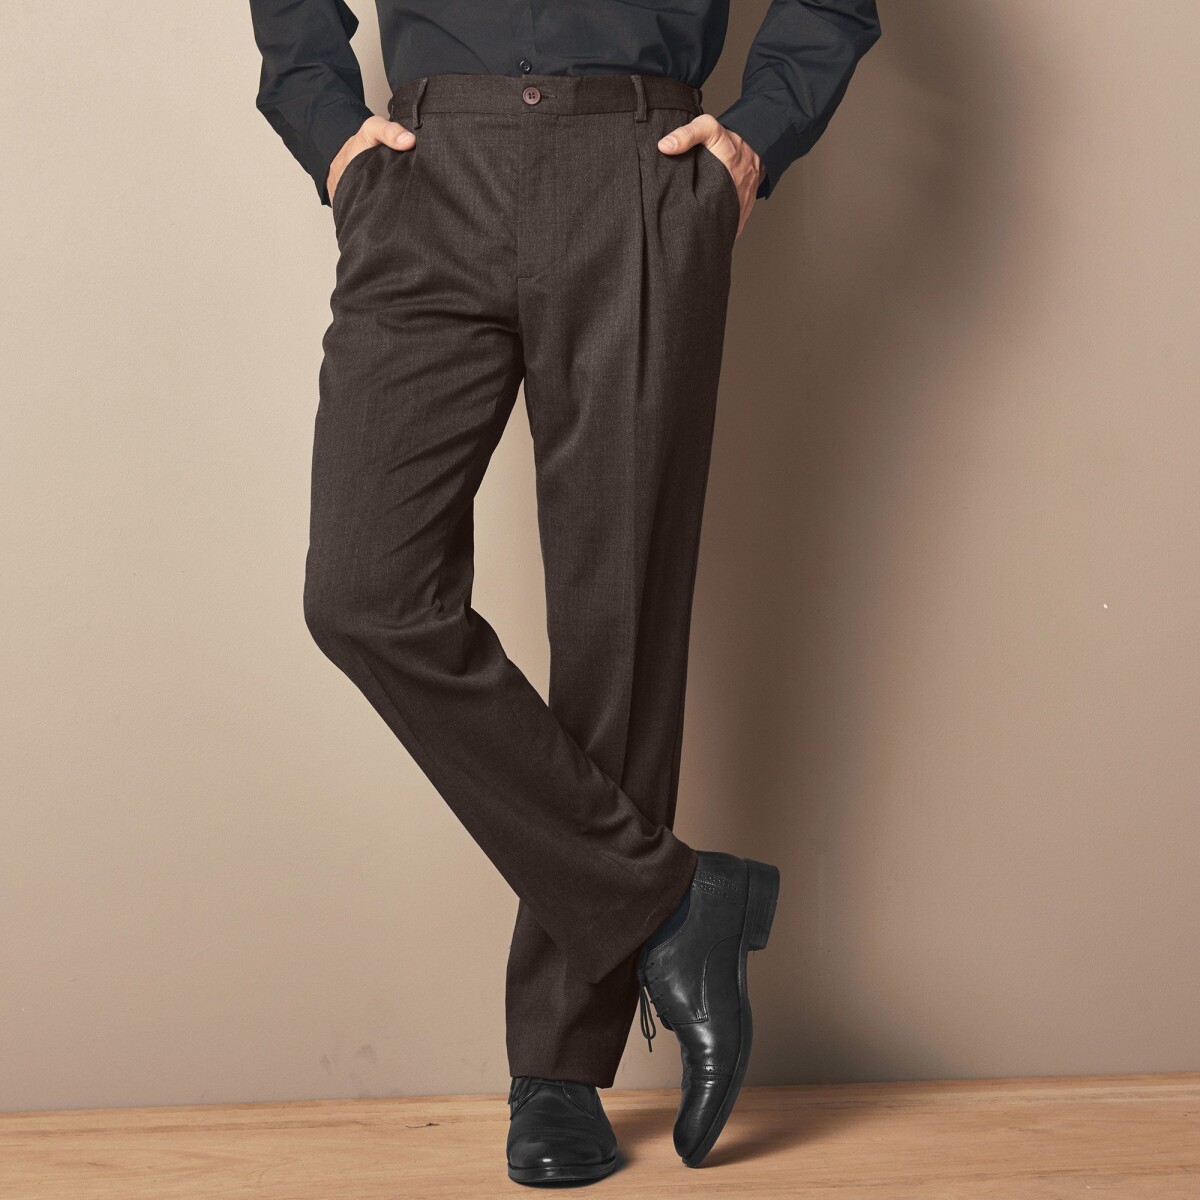 Nohavice s pružným pásom, polyester/vlna